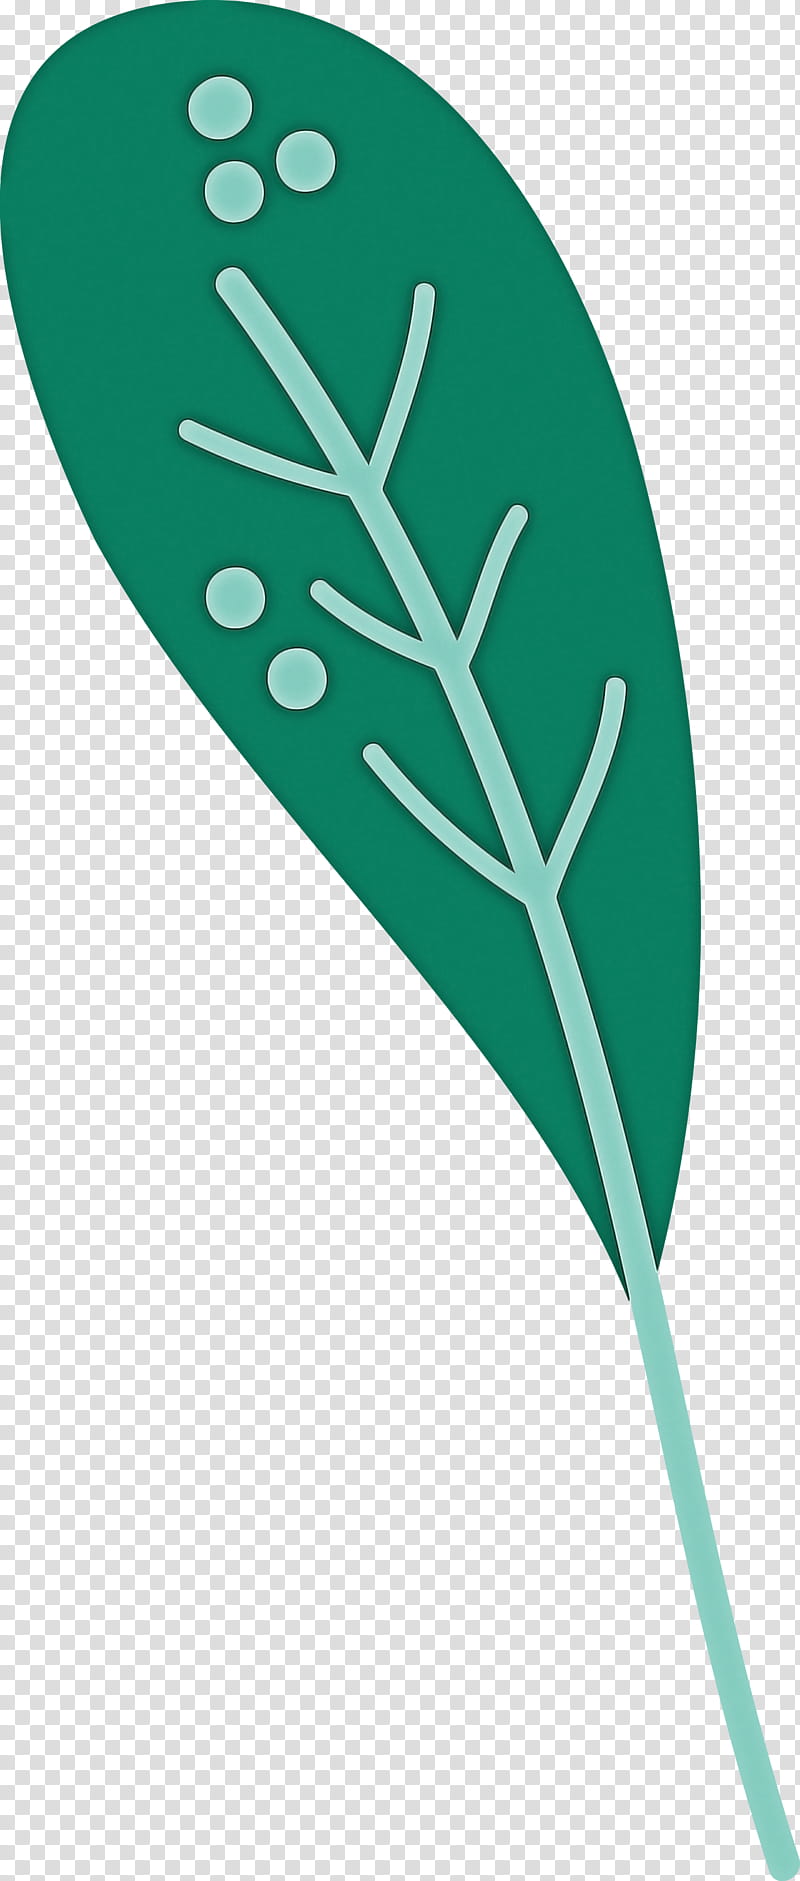 Palm trees, Leaf Cartoon, Leaf , Leaf Abstract, Plant Stem, Line Art, Flower, Computer transparent background PNG clipart